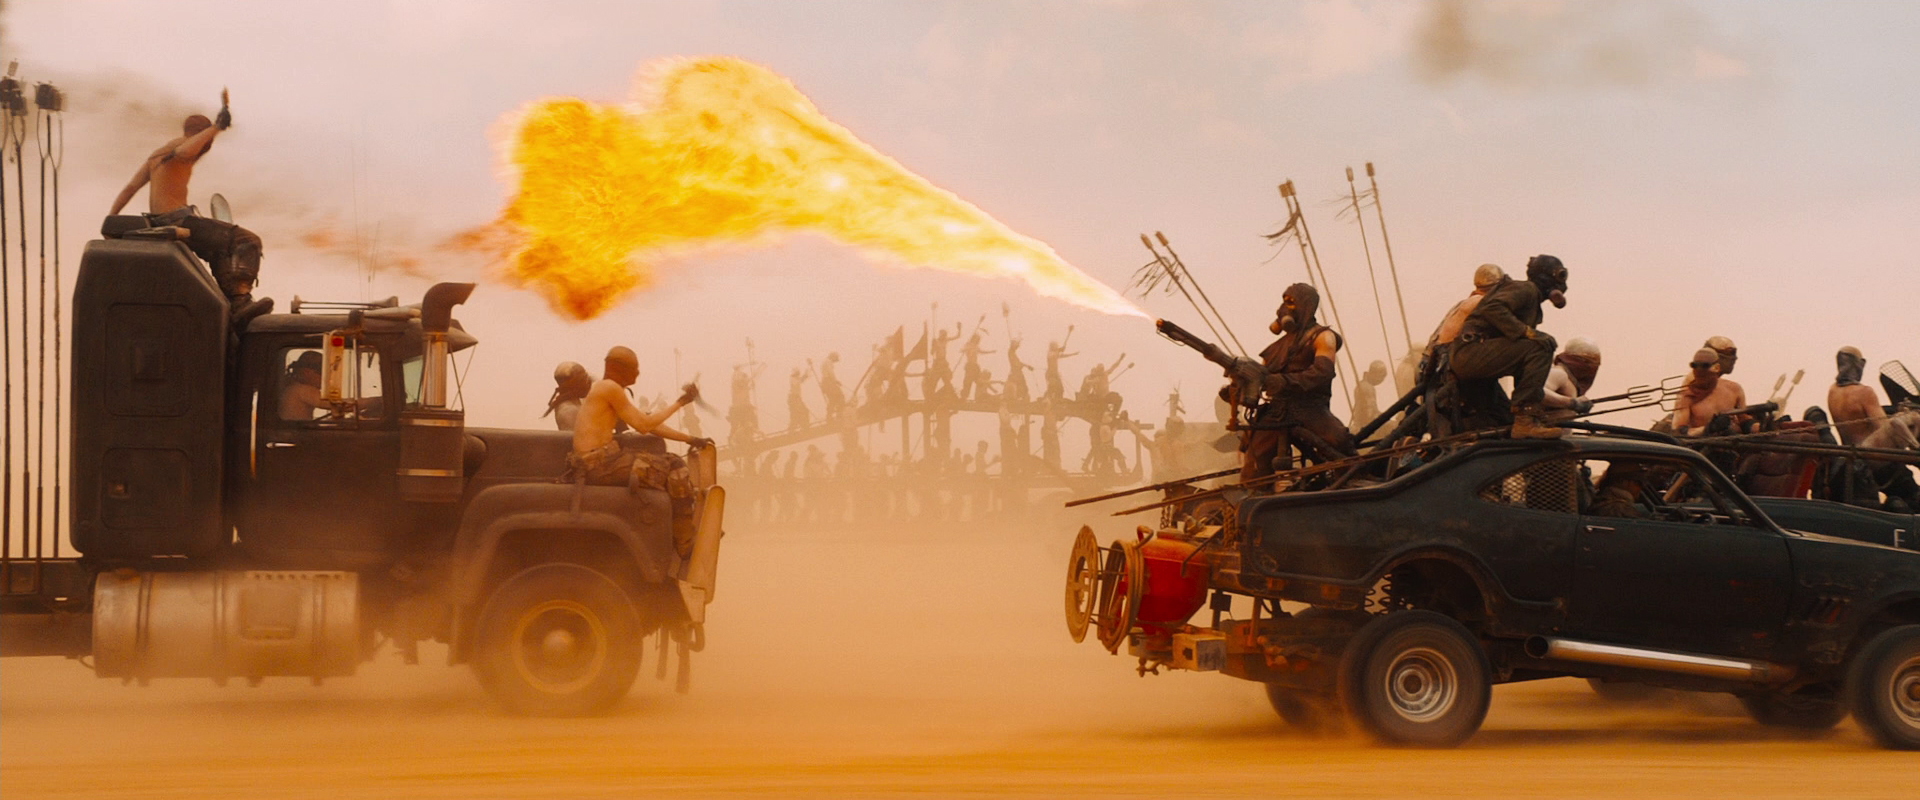 Mad Max Fury Road Movies Film Stills Flamethrowers Truck Car Vehicle Gas Masks Mad Max 1920x800